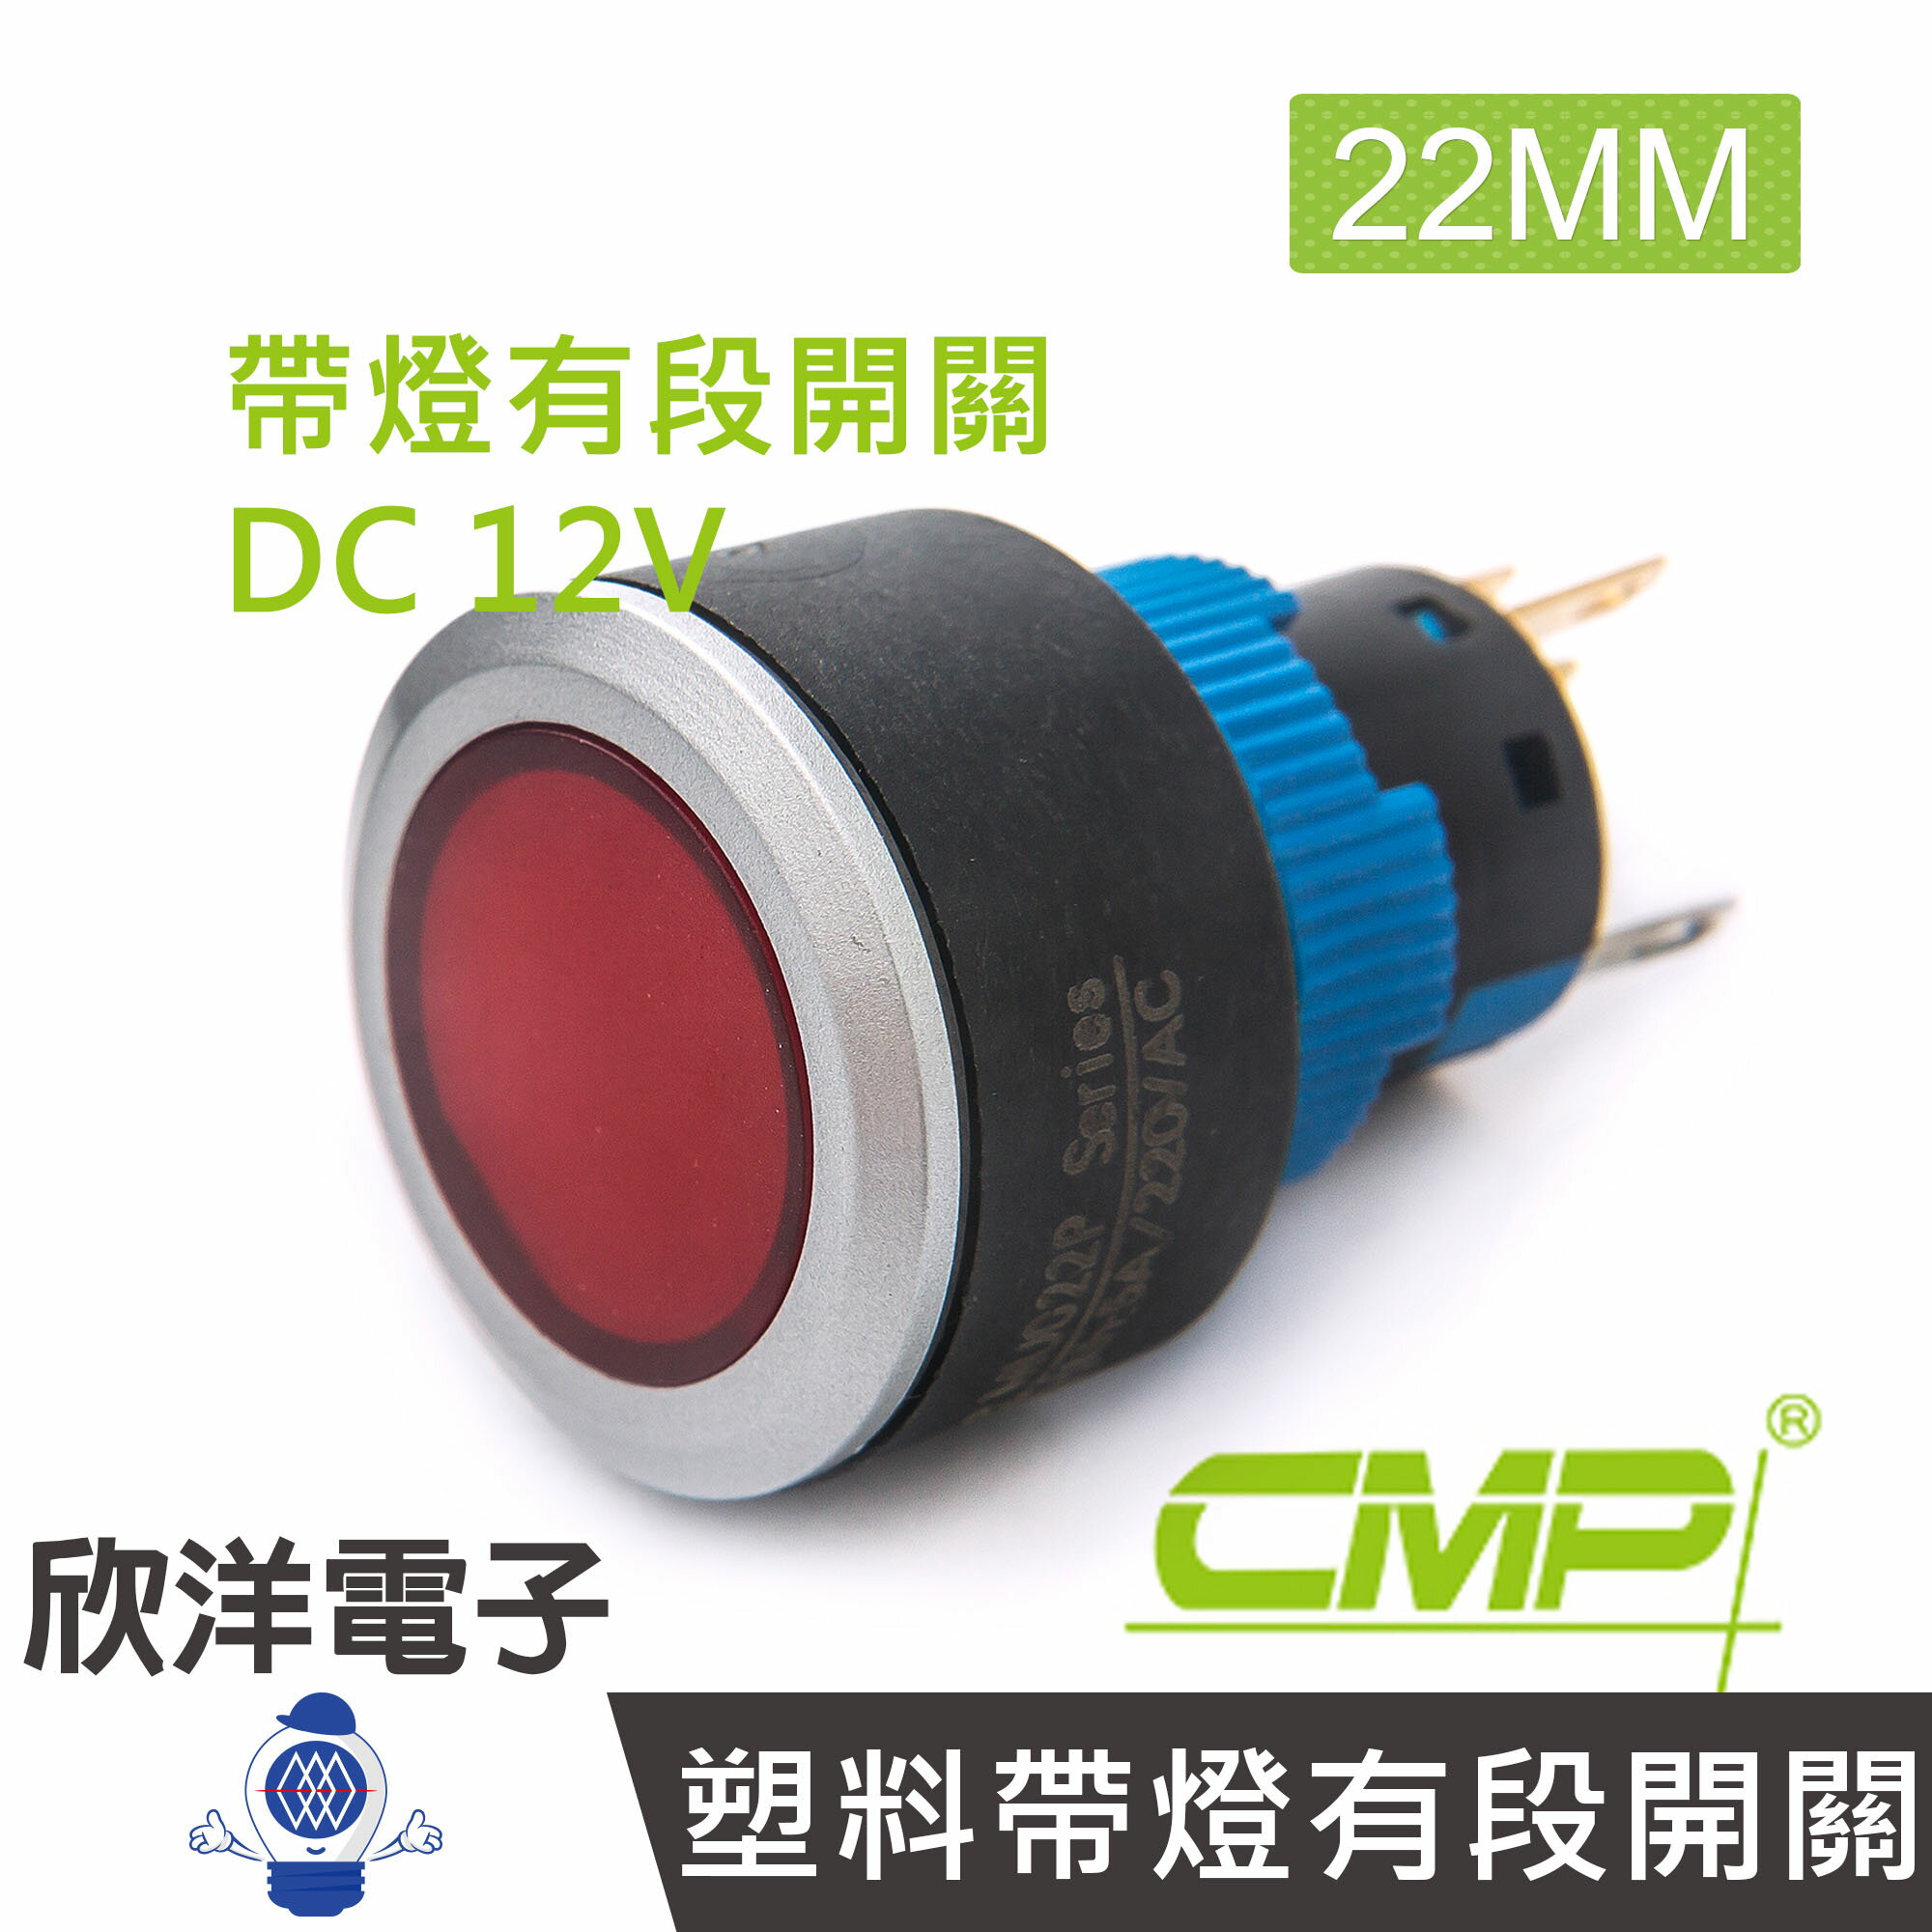 ※ 欣洋電子 ※ 22mm仿金屬塑料帶燈有段開關DC12V / P2202B-12V 藍、綠、紅、白、橙 五色光自由選購/ CMP西普